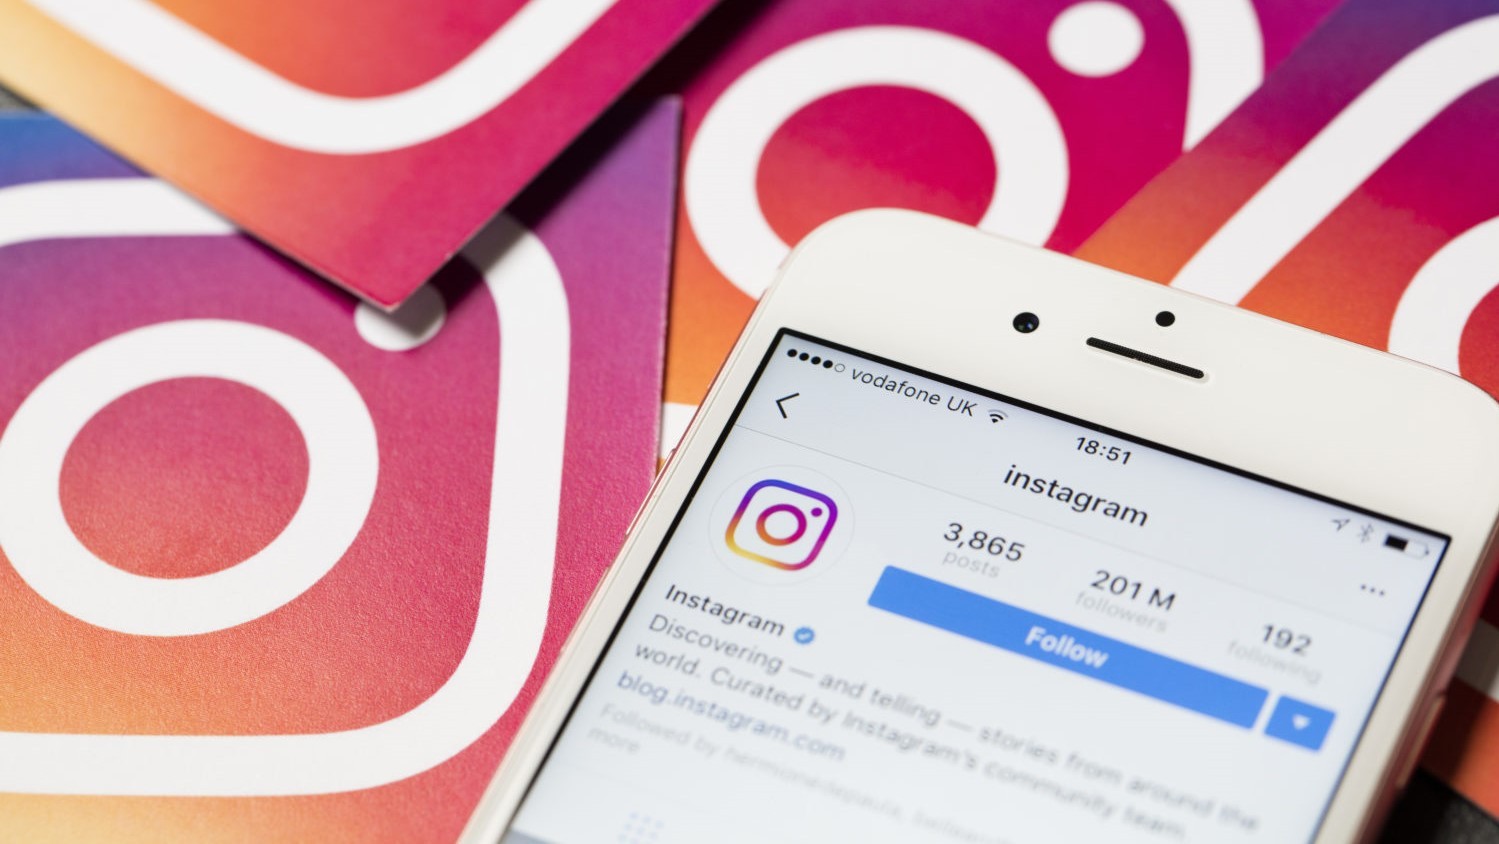 Instagram тестирует новый дизайн профиля пользователя